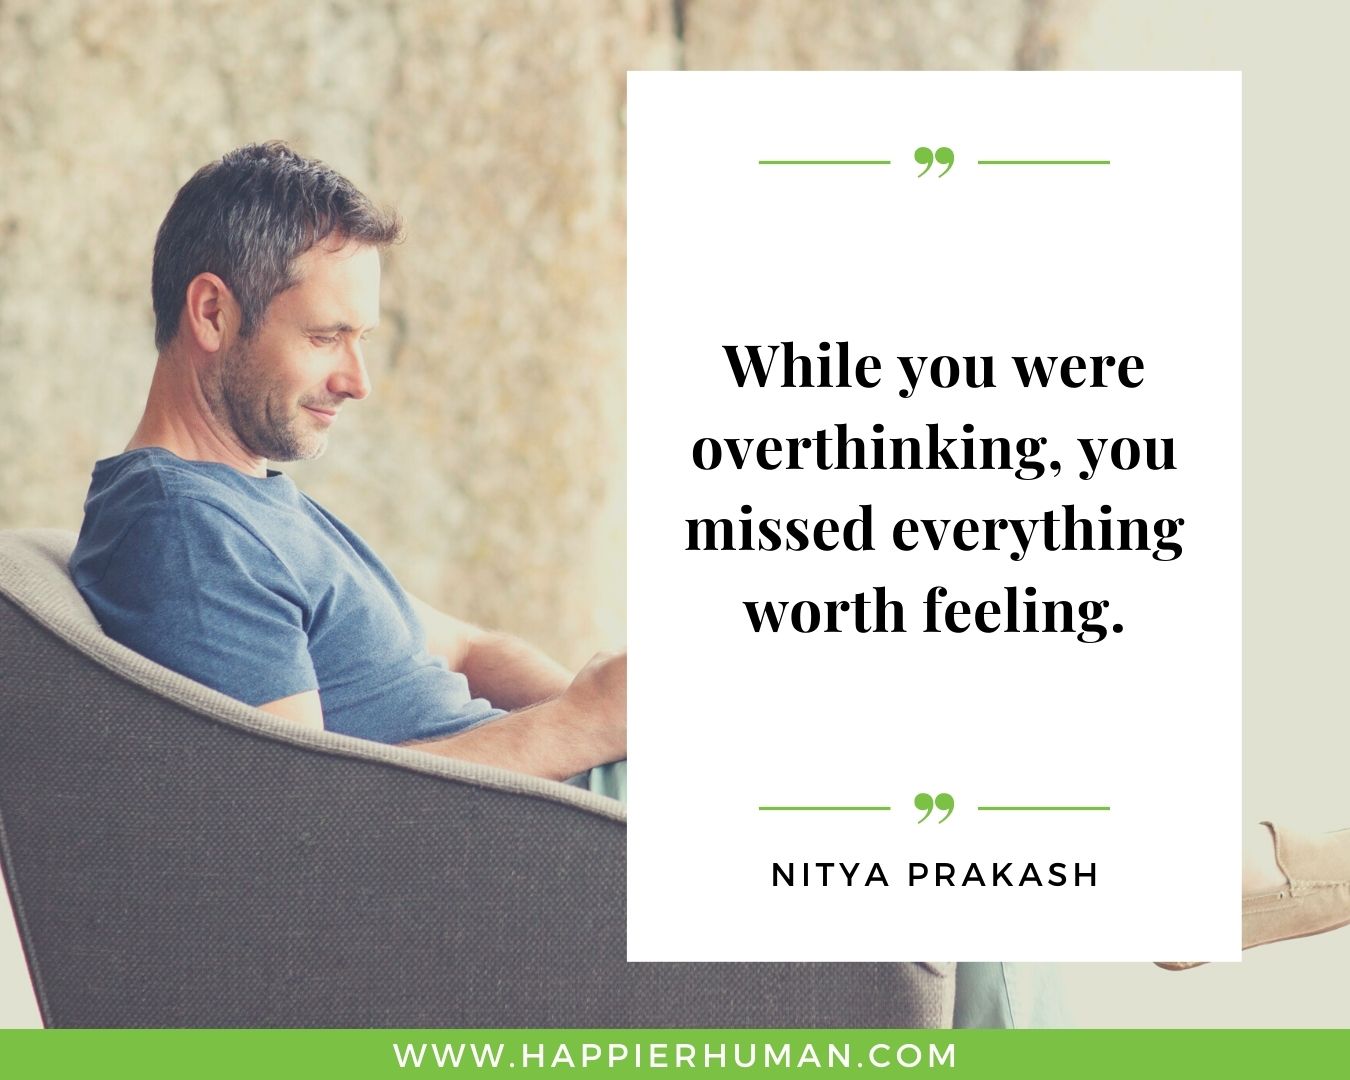 Overthinking Quotes - “While you were overthinking, you missed everything worth feeling.” - Nitya Prakash